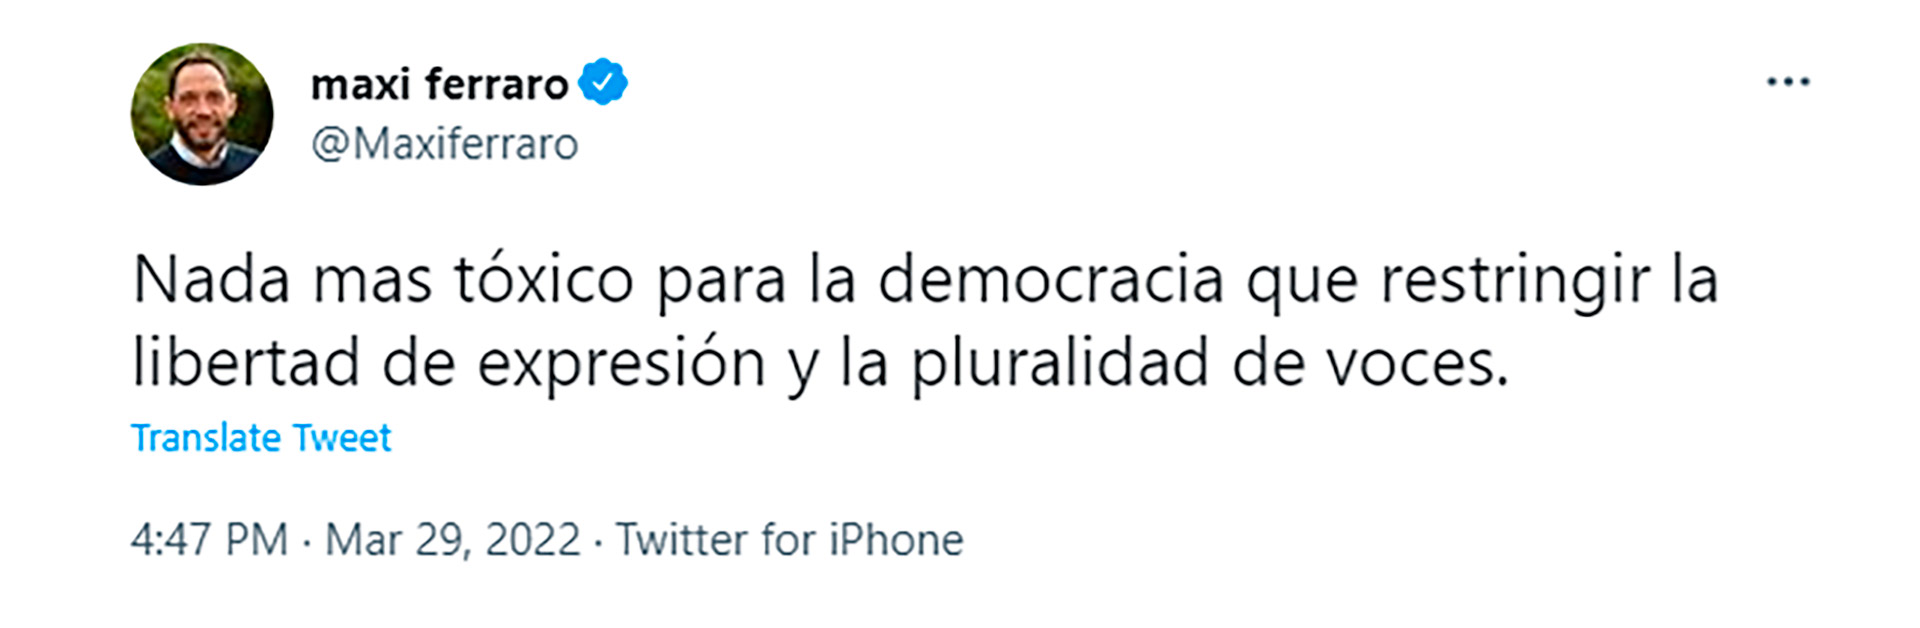 Tuit de Maximiliano Ferraro, presidente de la Coalición Cívica